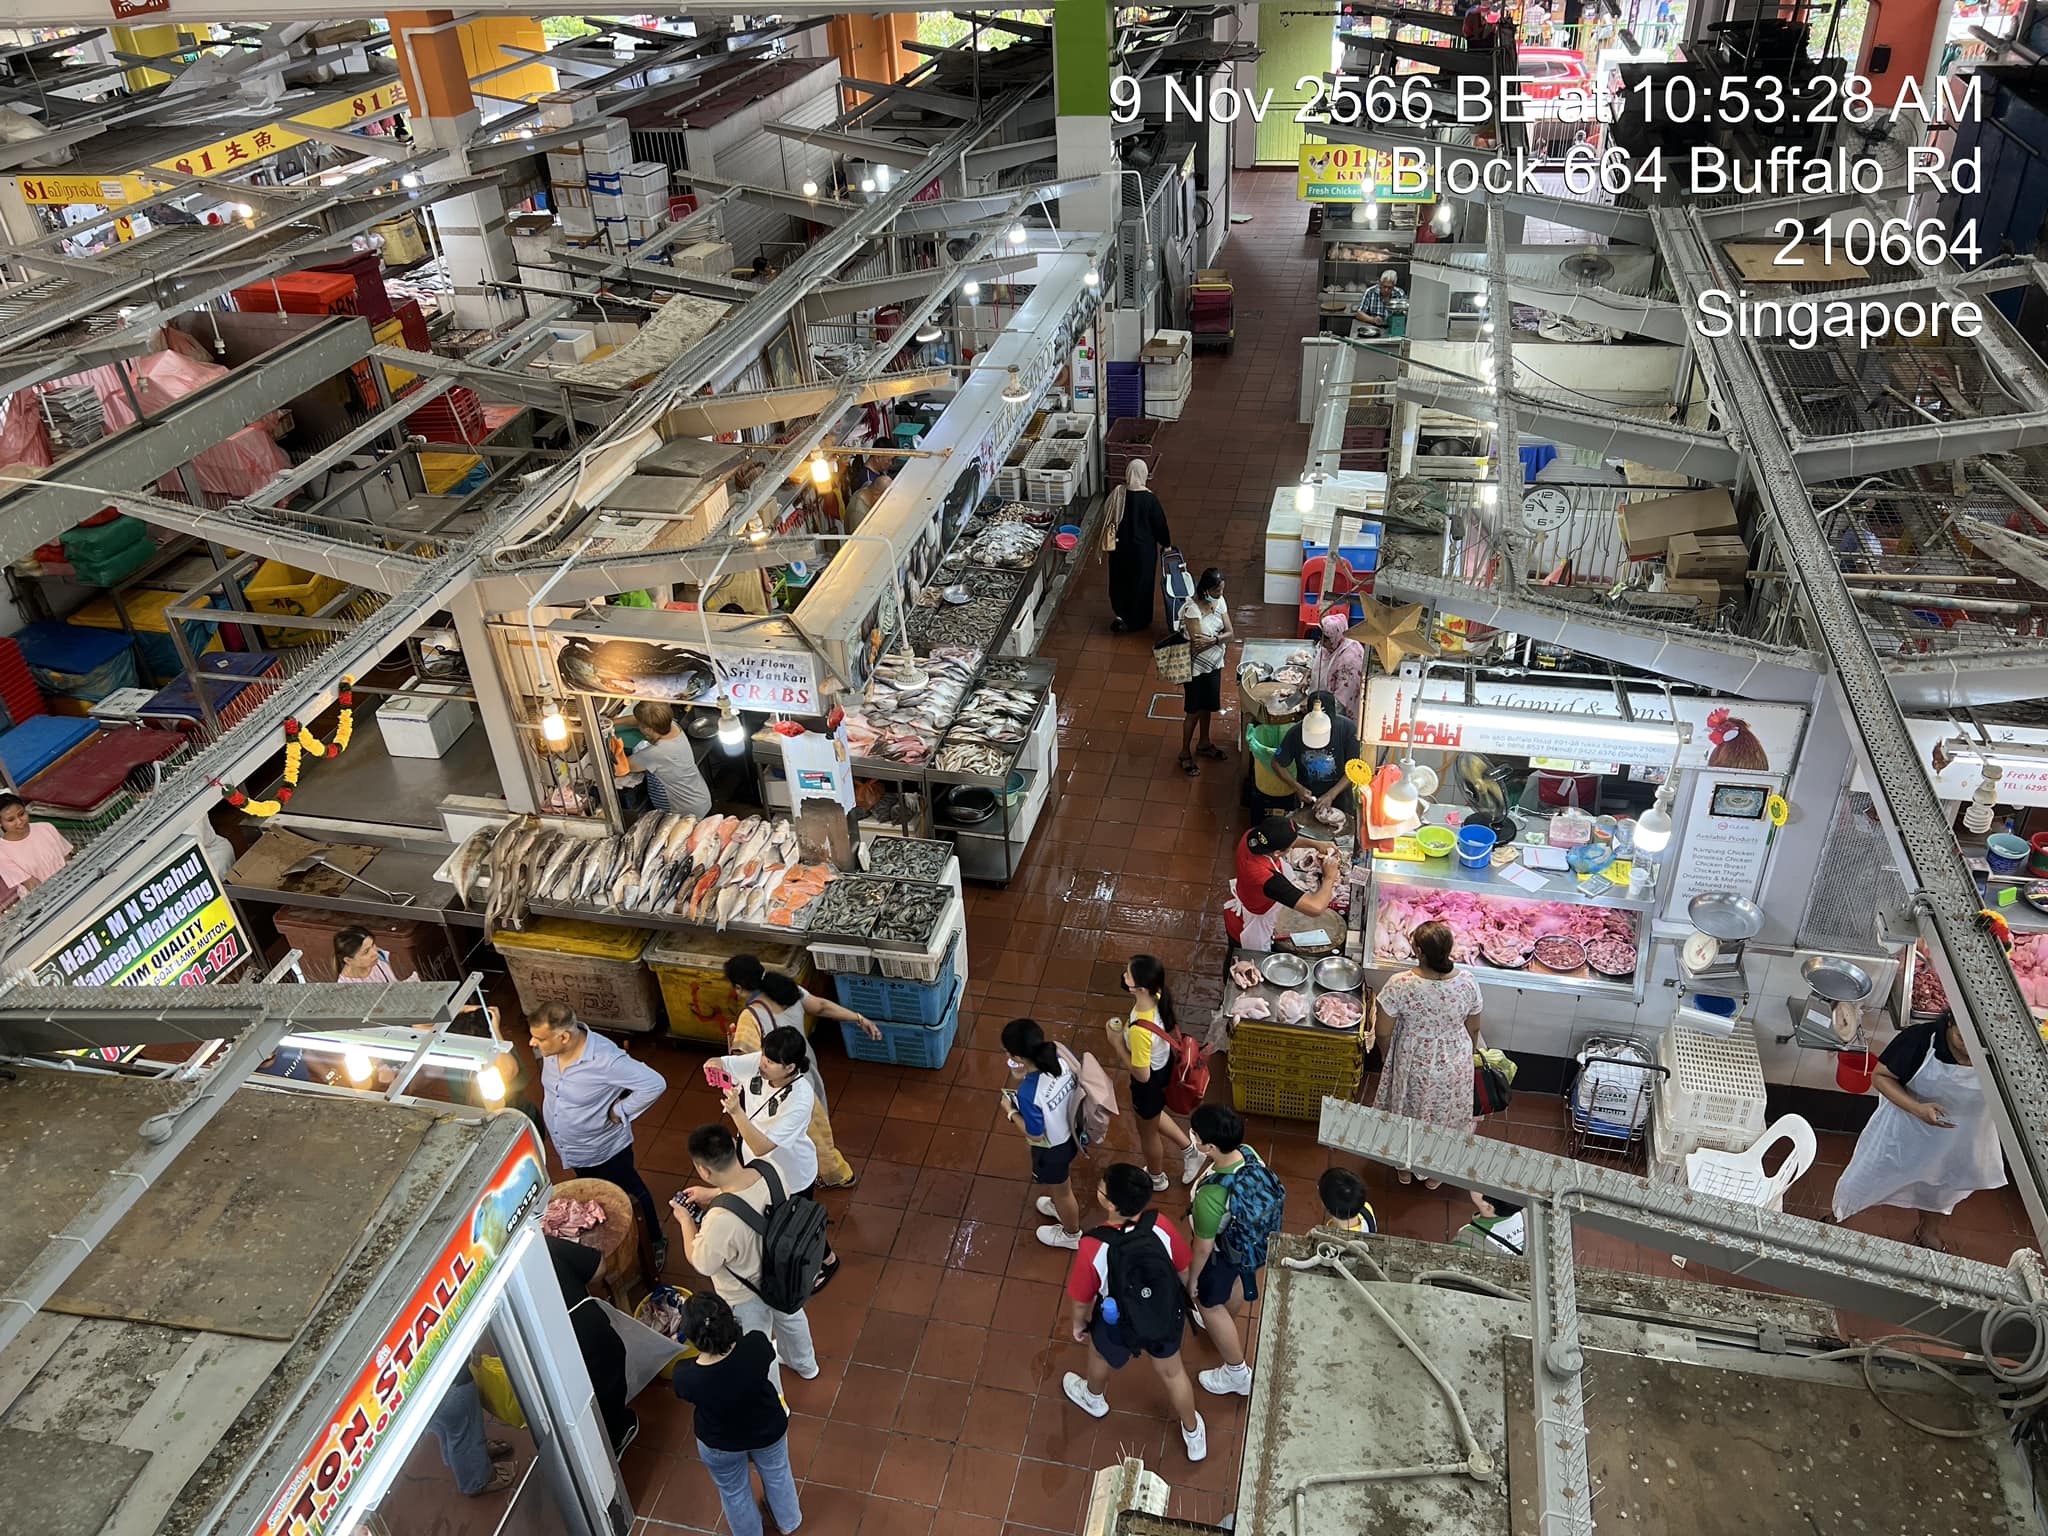 Tekka market center